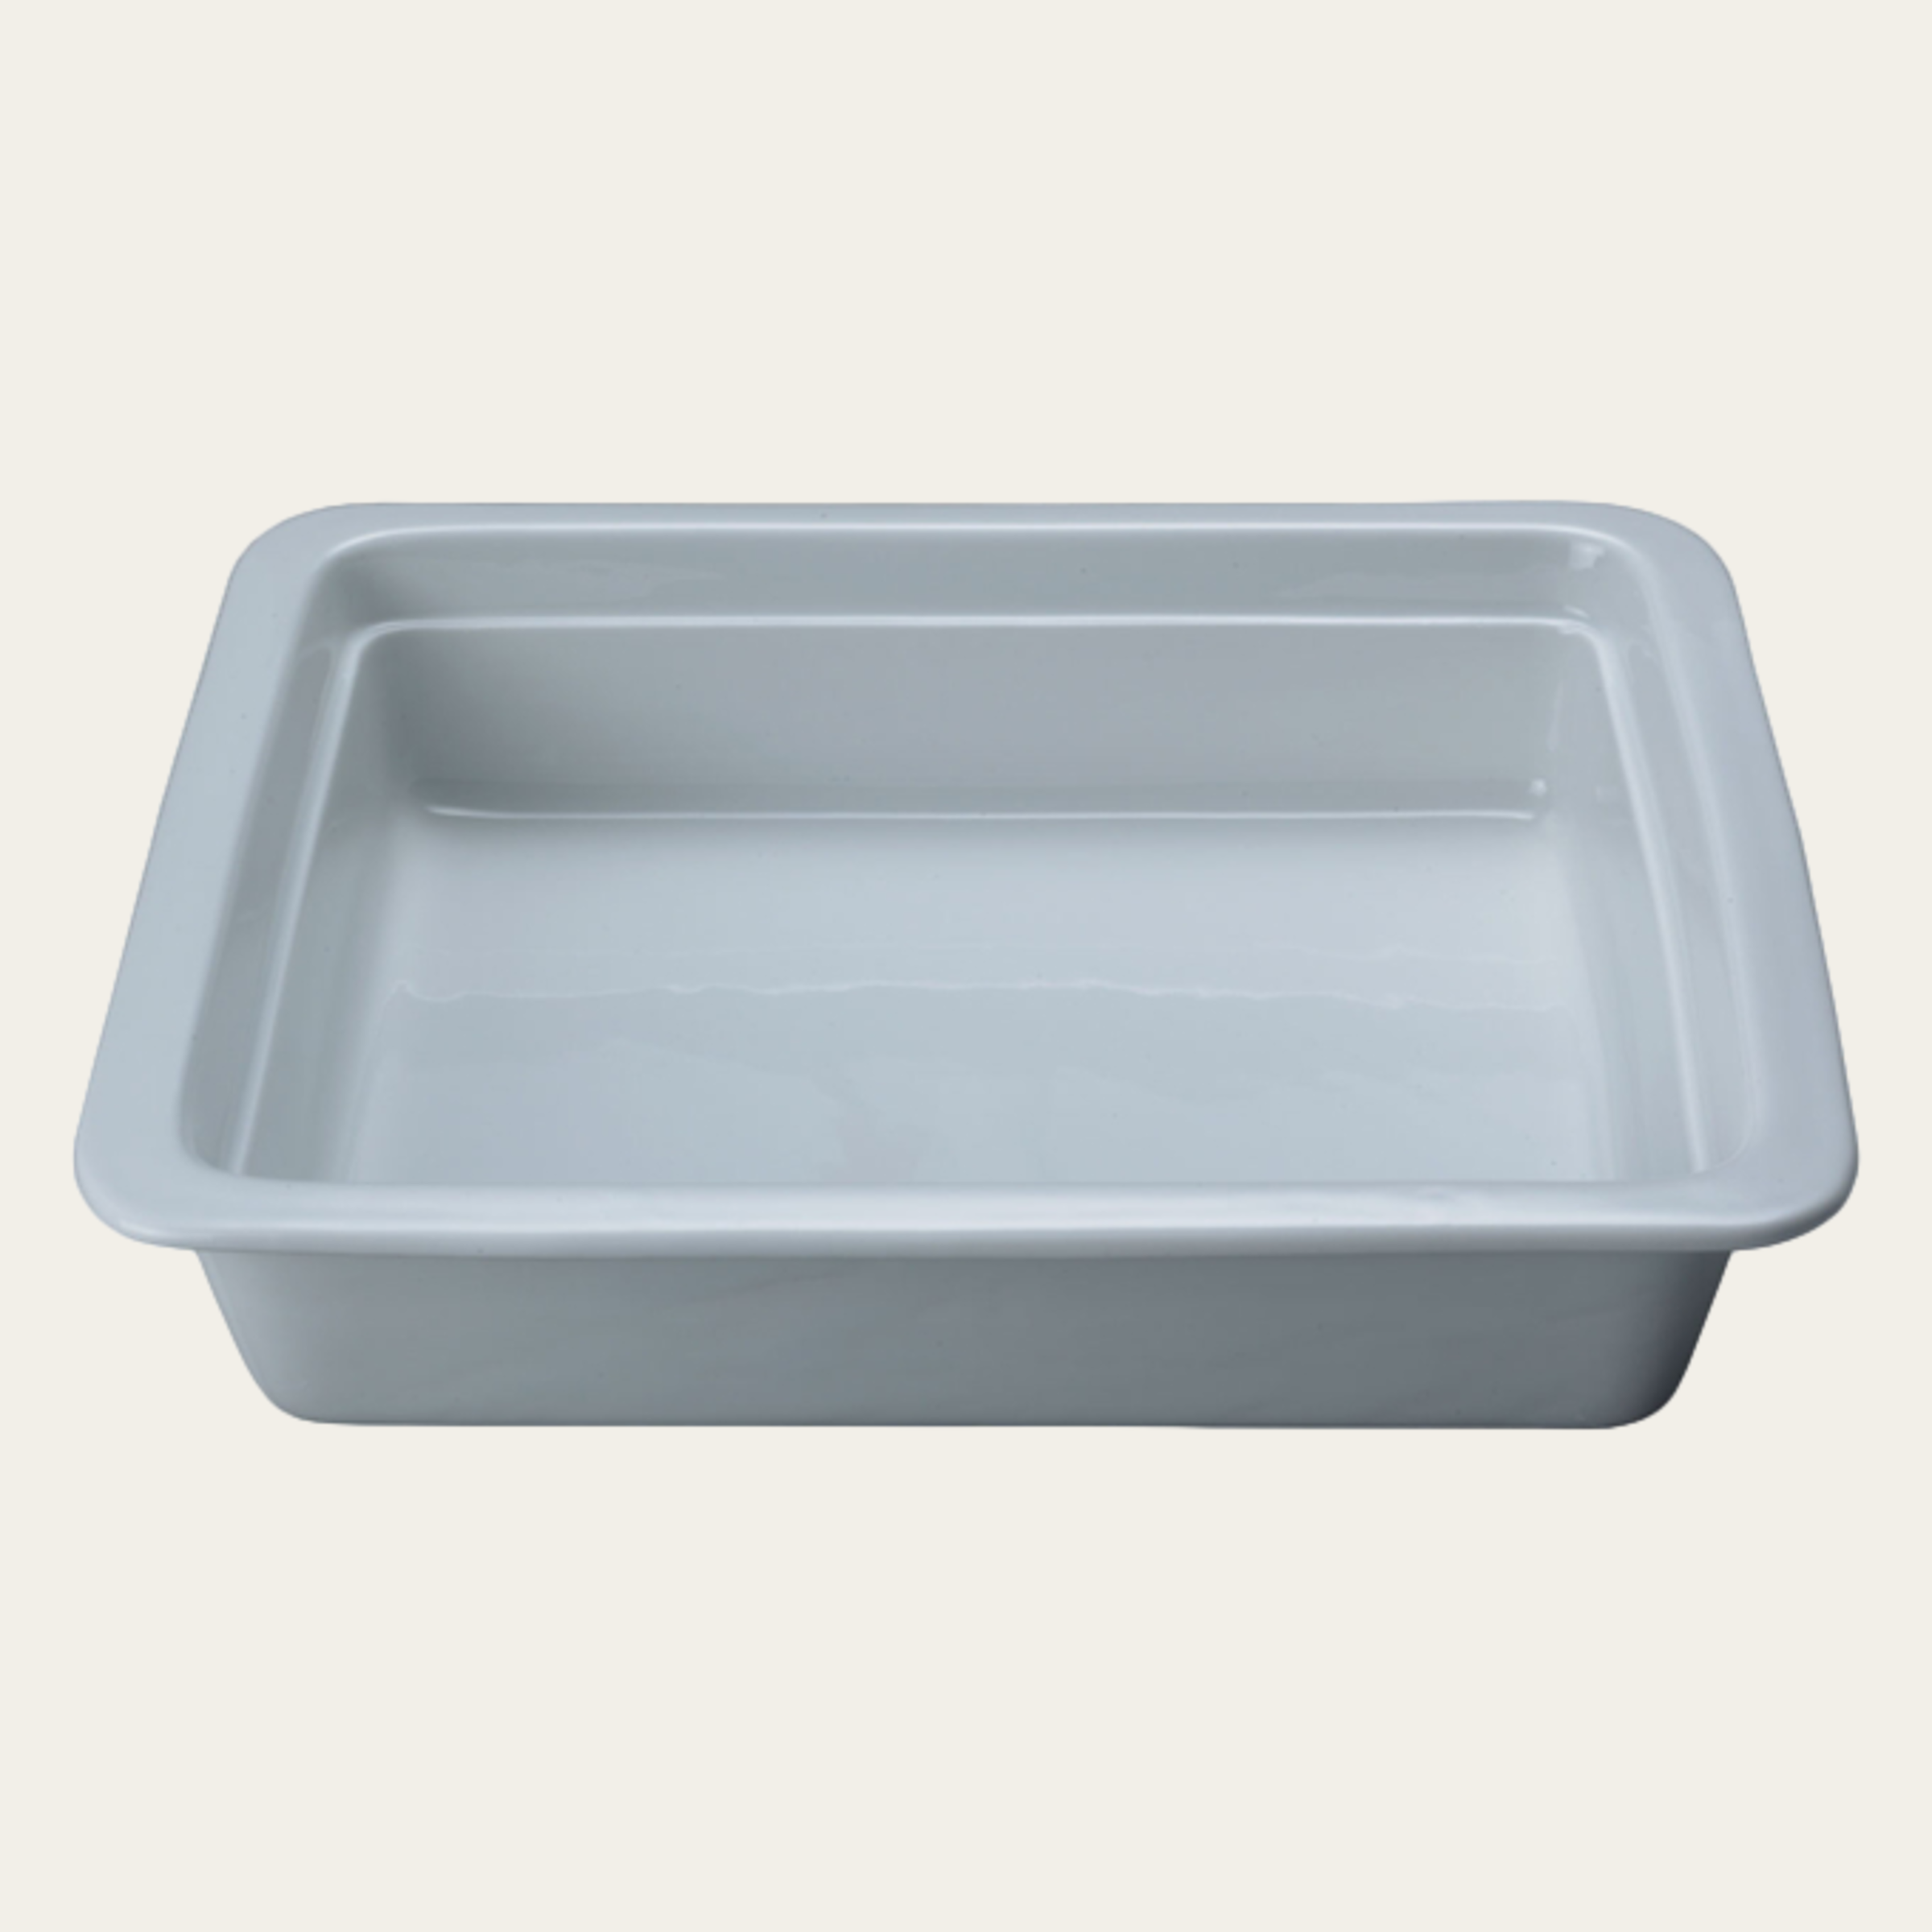 Porcelain dish, 1/2 GN, W 325 x D 265 x H 65 mm